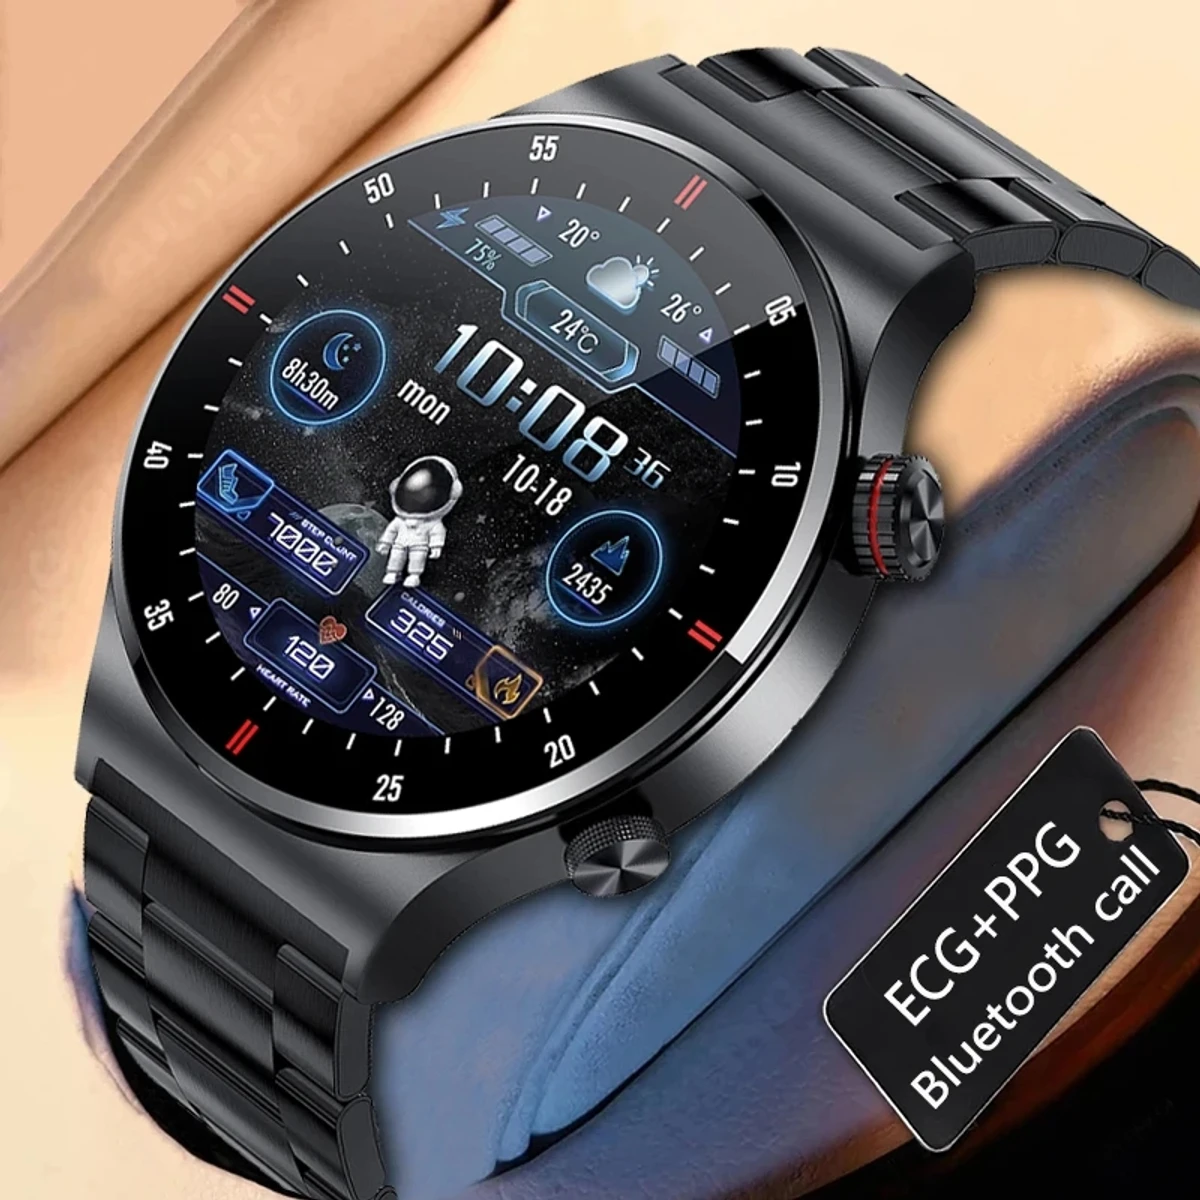 LIGE ECG, PPG, NFC Door Lock / Unlock Smart Watch